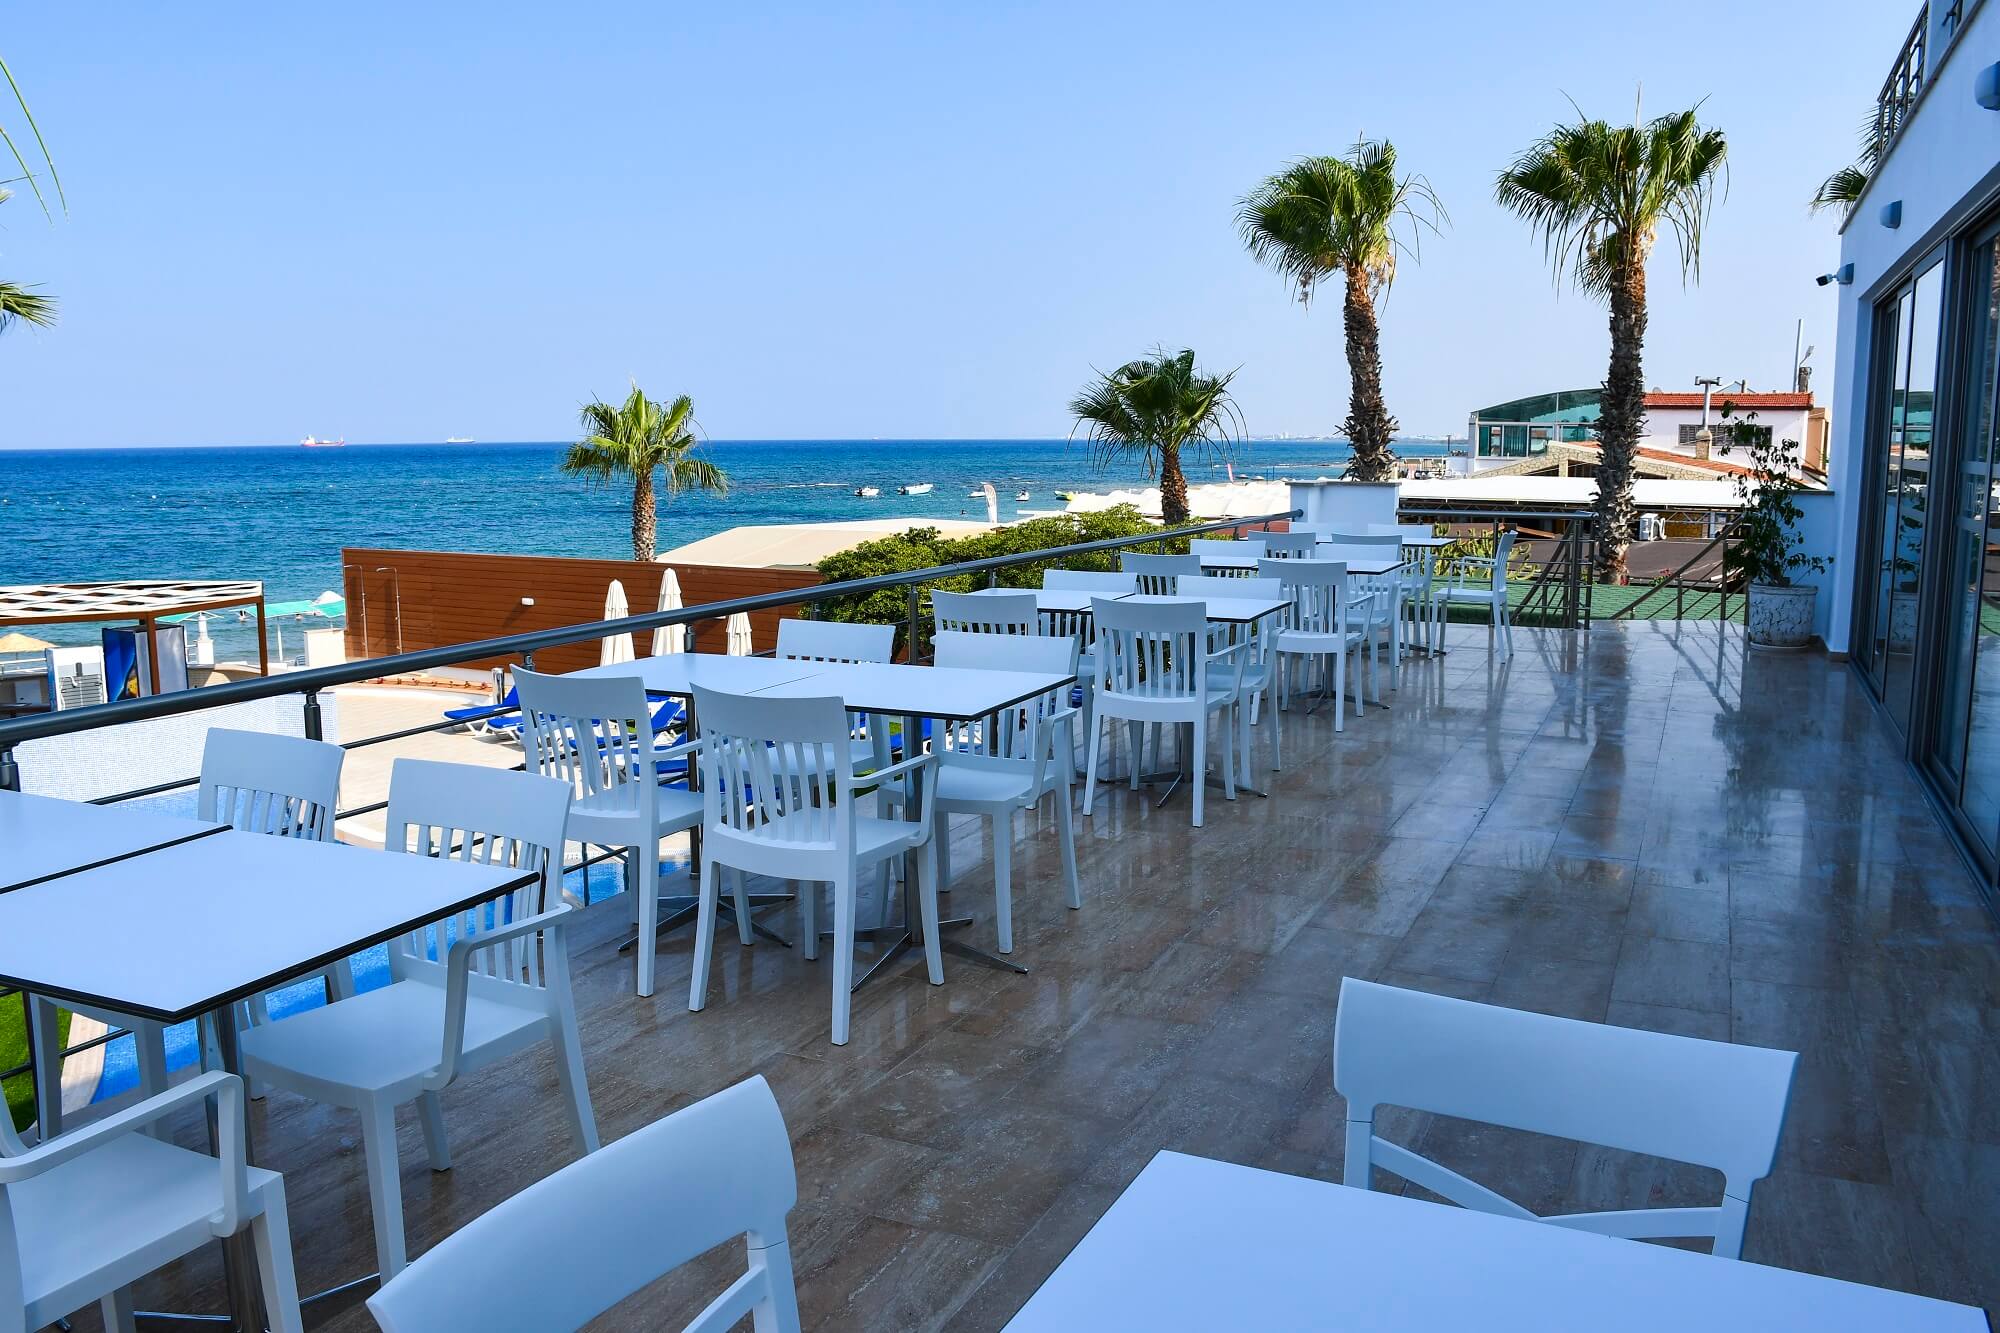 Terrasse mit Ausblick- Mimoza Beach Hotel - Lupe Reisen